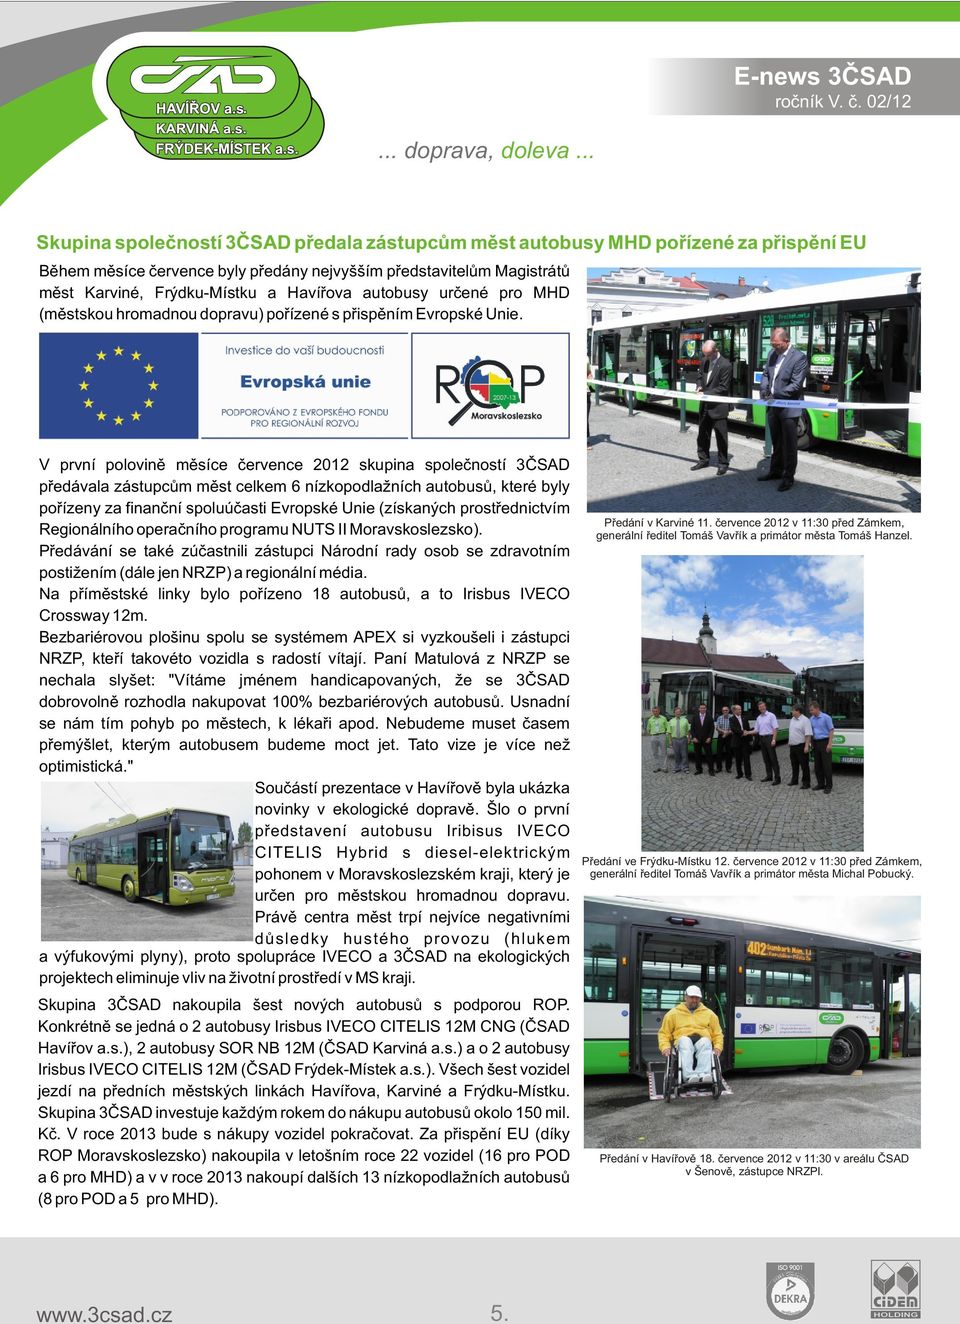 V první polovinì mìsíce èervence 2012 skupina spoleèností 3ÈSAD pøedávala zástupcùm mìst celkem 6 nízkopodlažních autobusù, které byly poøízeny za finanèní spoluúèasti Evropské Unie (získaných